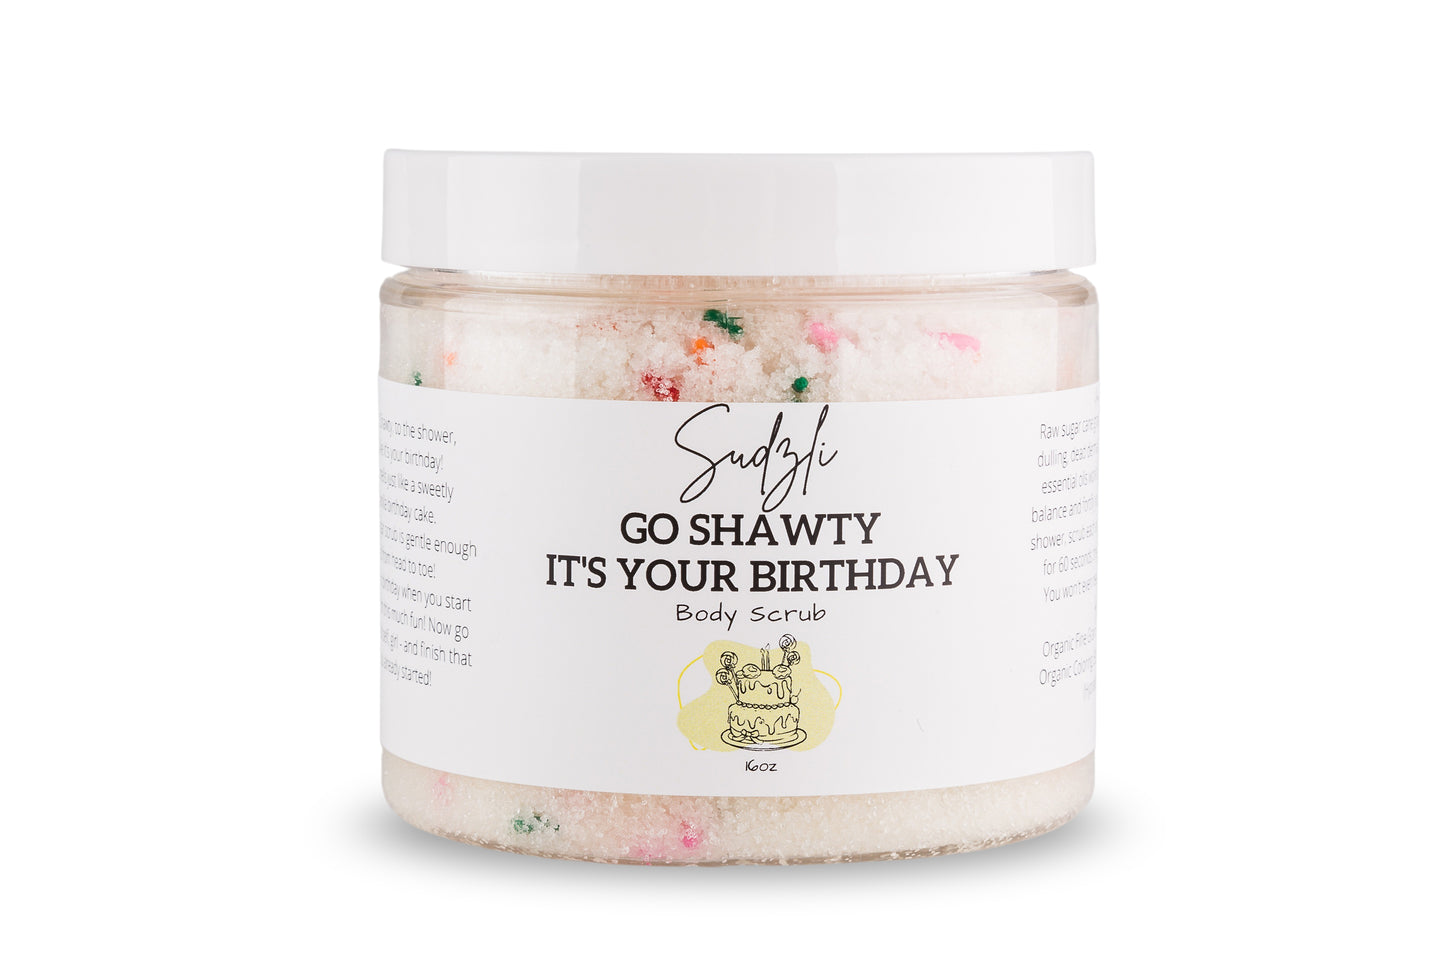 Go Shawty, It's Your Birthday Body Scrub